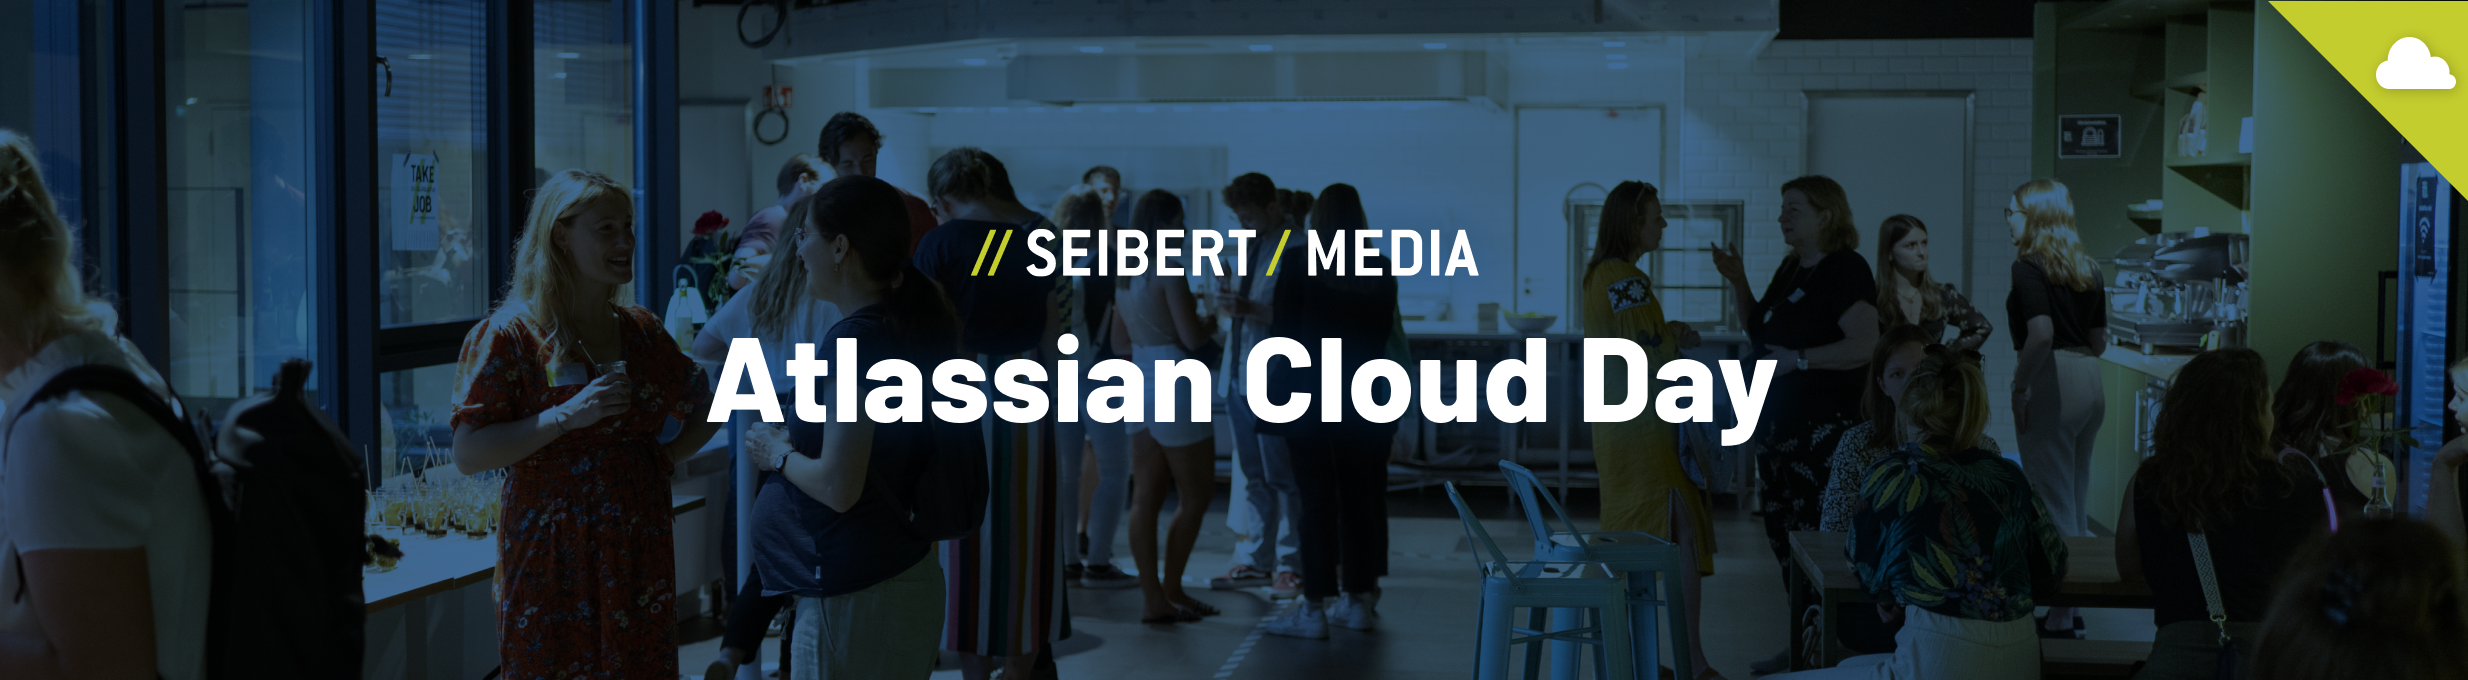 Die Vorfreude steigt – in einer Woche sehen wir uns beim Atlassian Cloud Day!